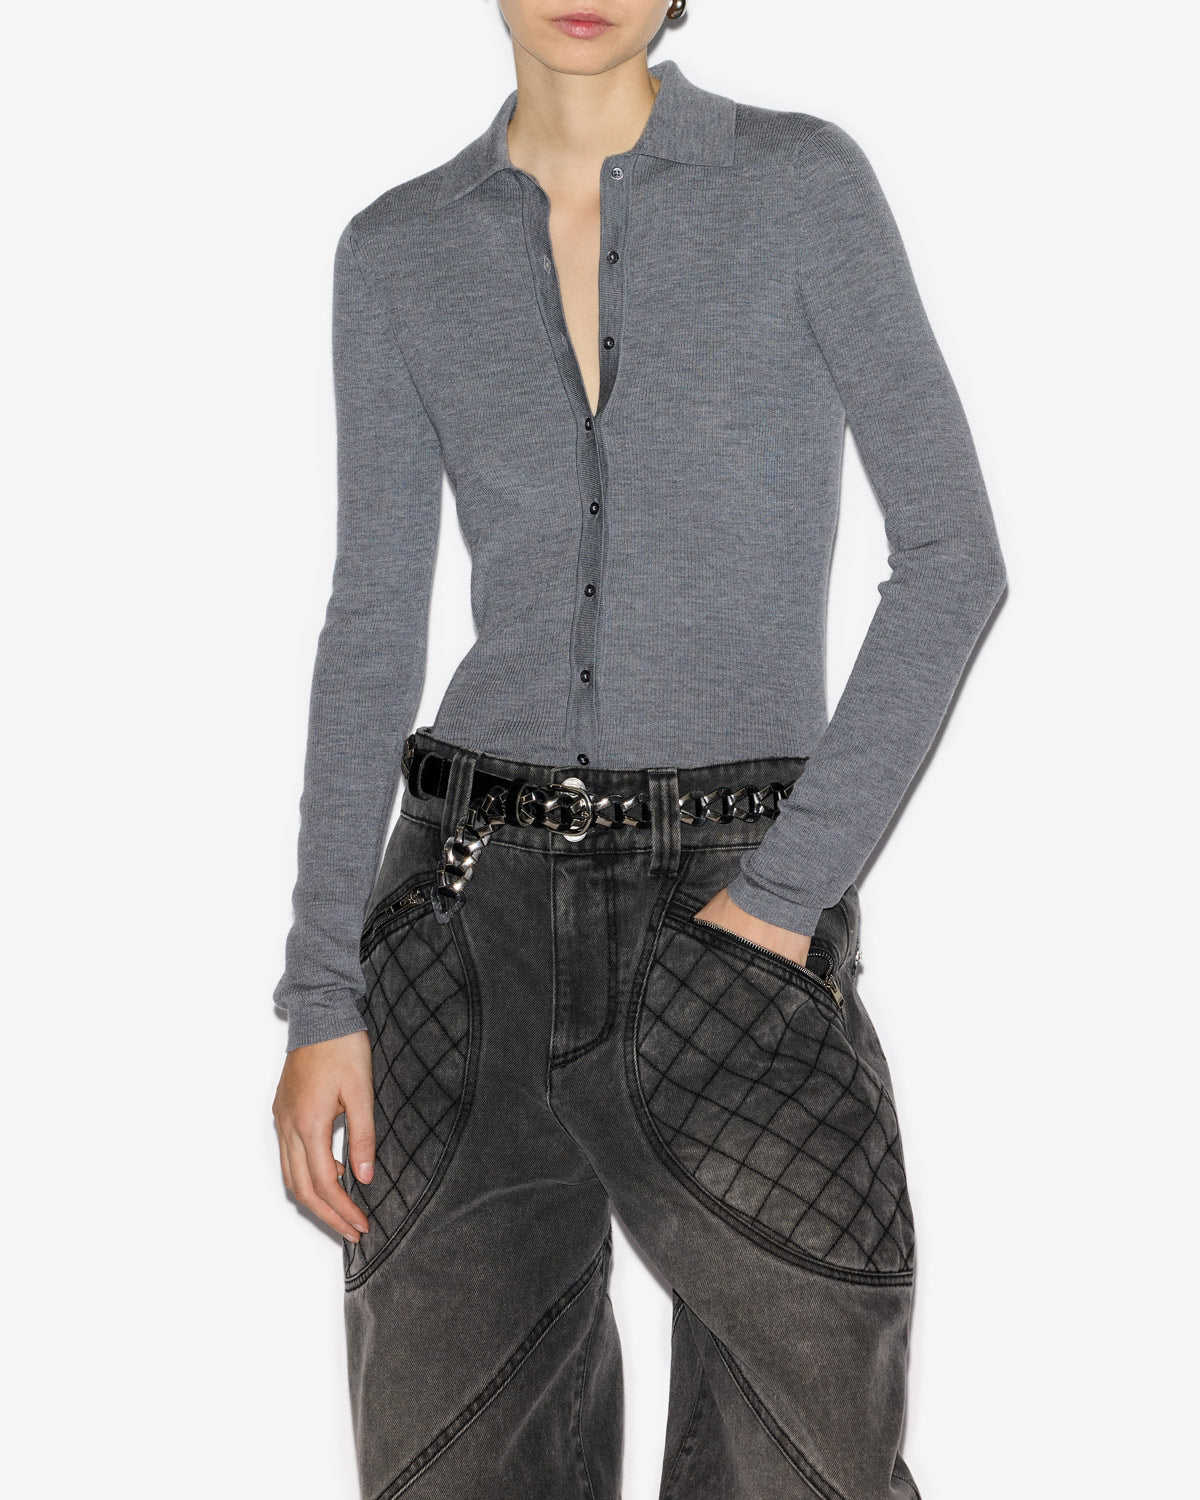 Pullover elvira Woman Medium gray 5